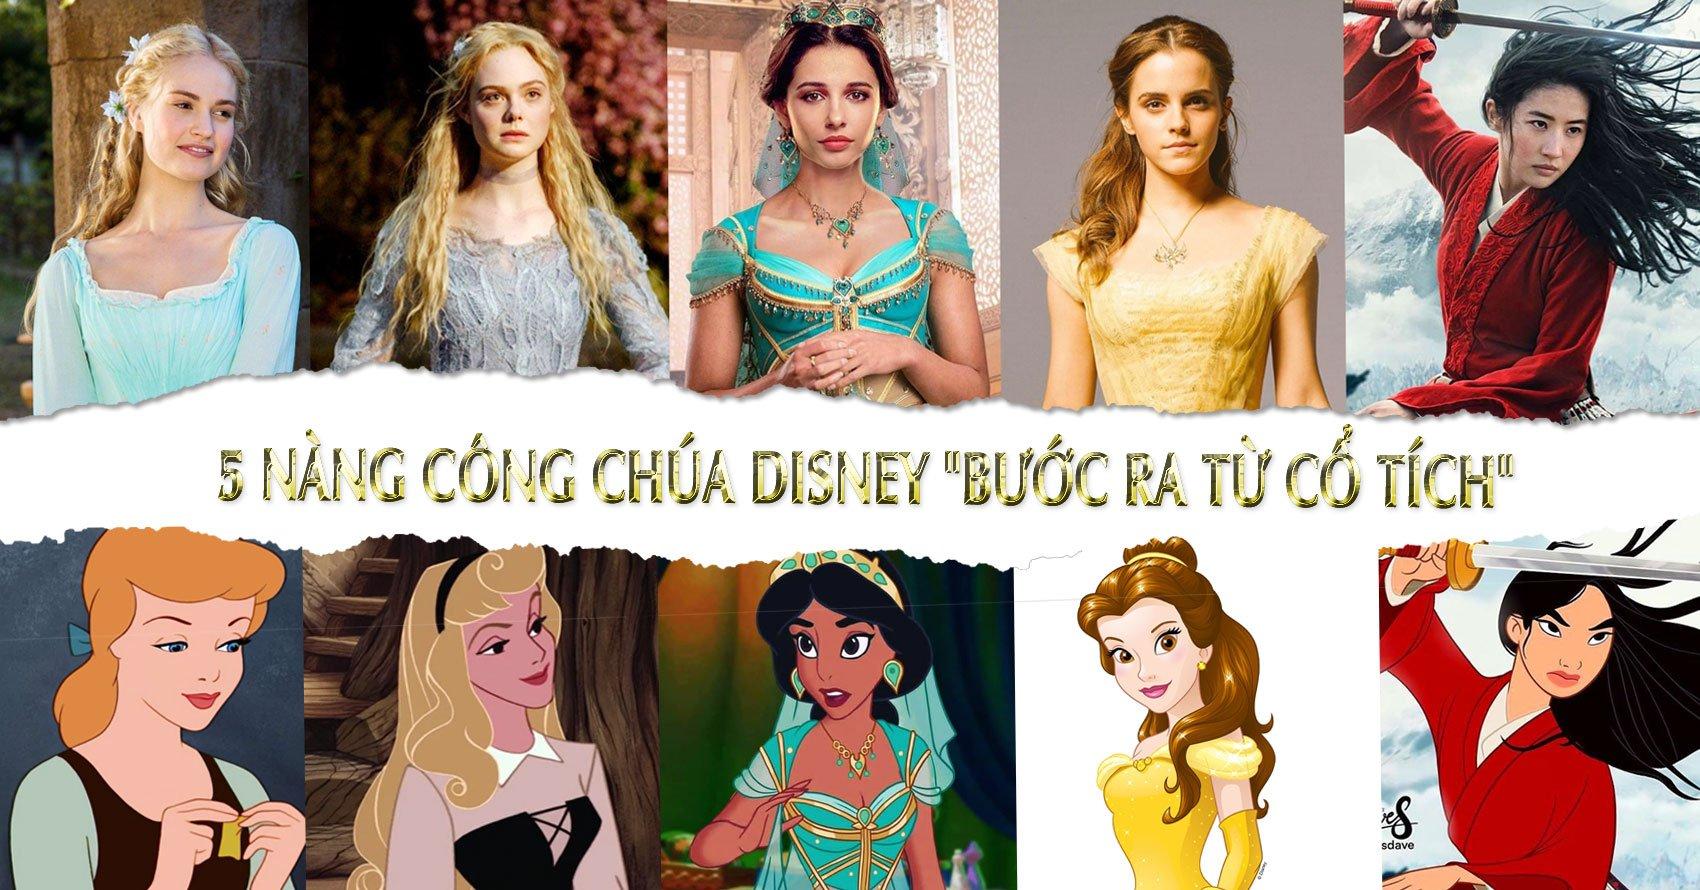 15 nàng công chúa Disney mới lạ trong dáng vẻ các Anime | Disney, Frozen  disney, Disney art